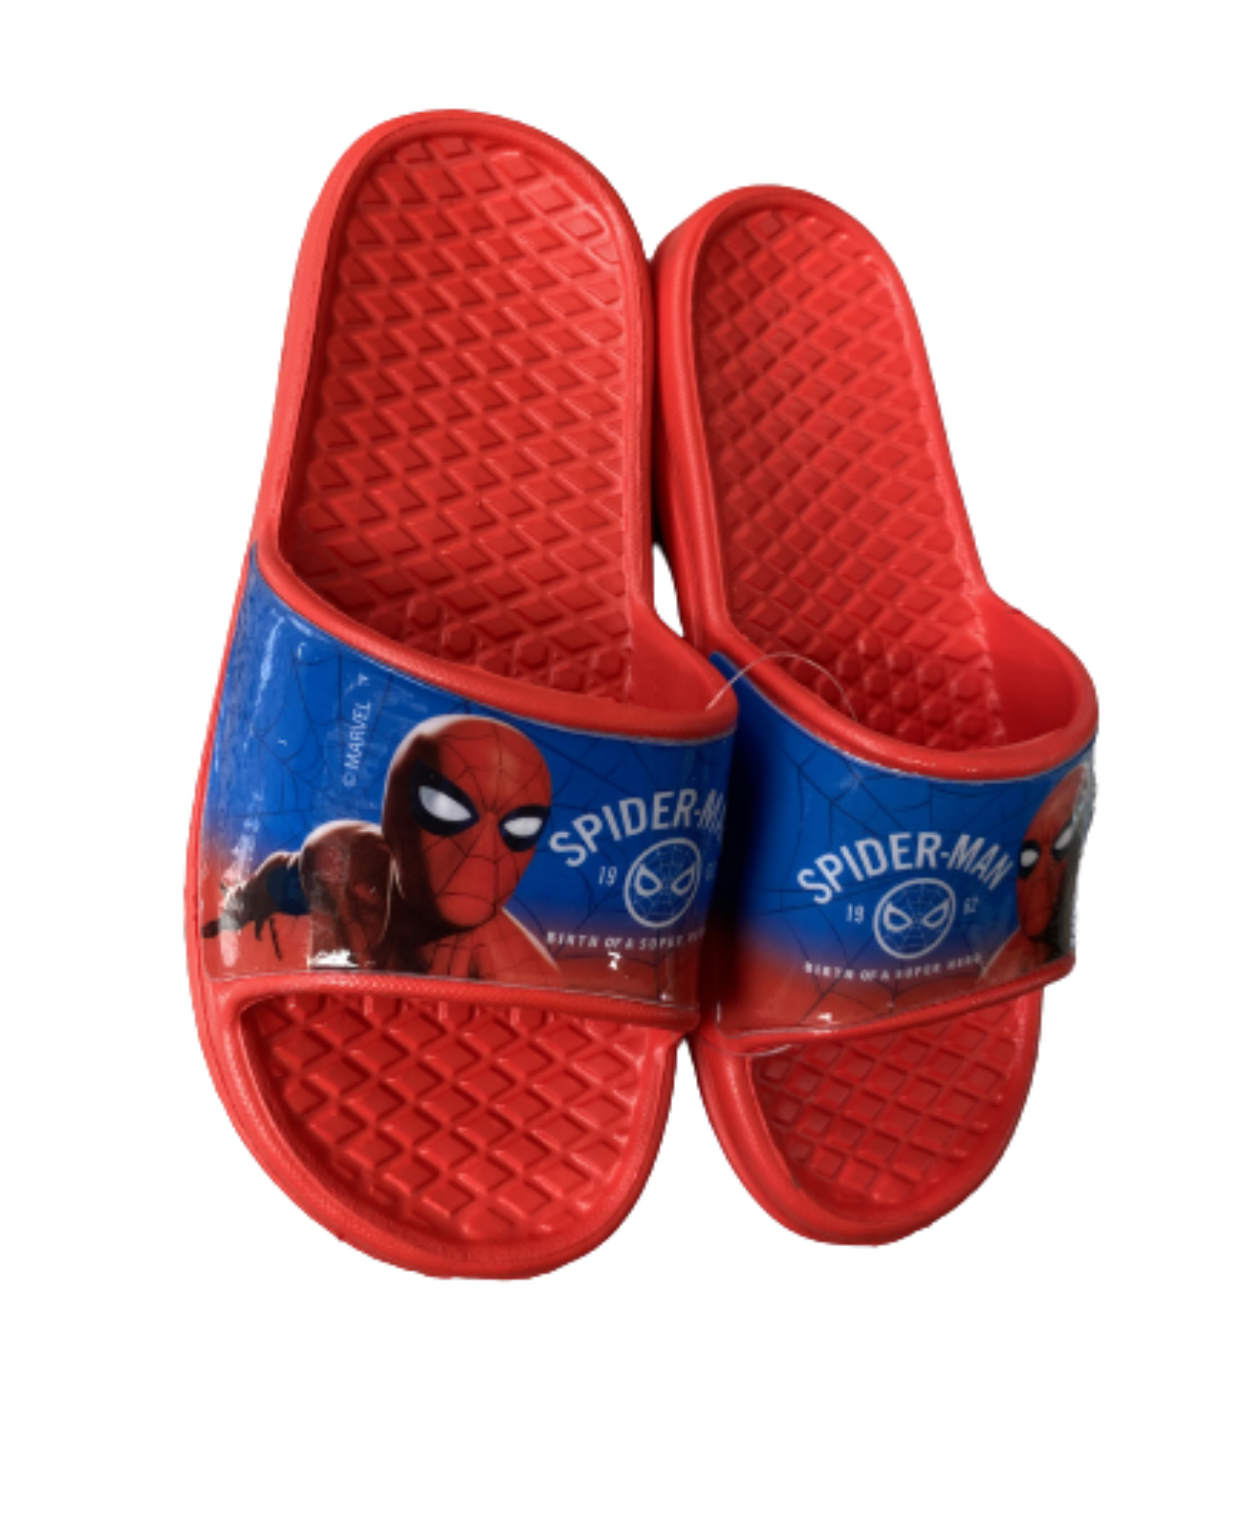 Spiderman badtofflor från Smallstars.se